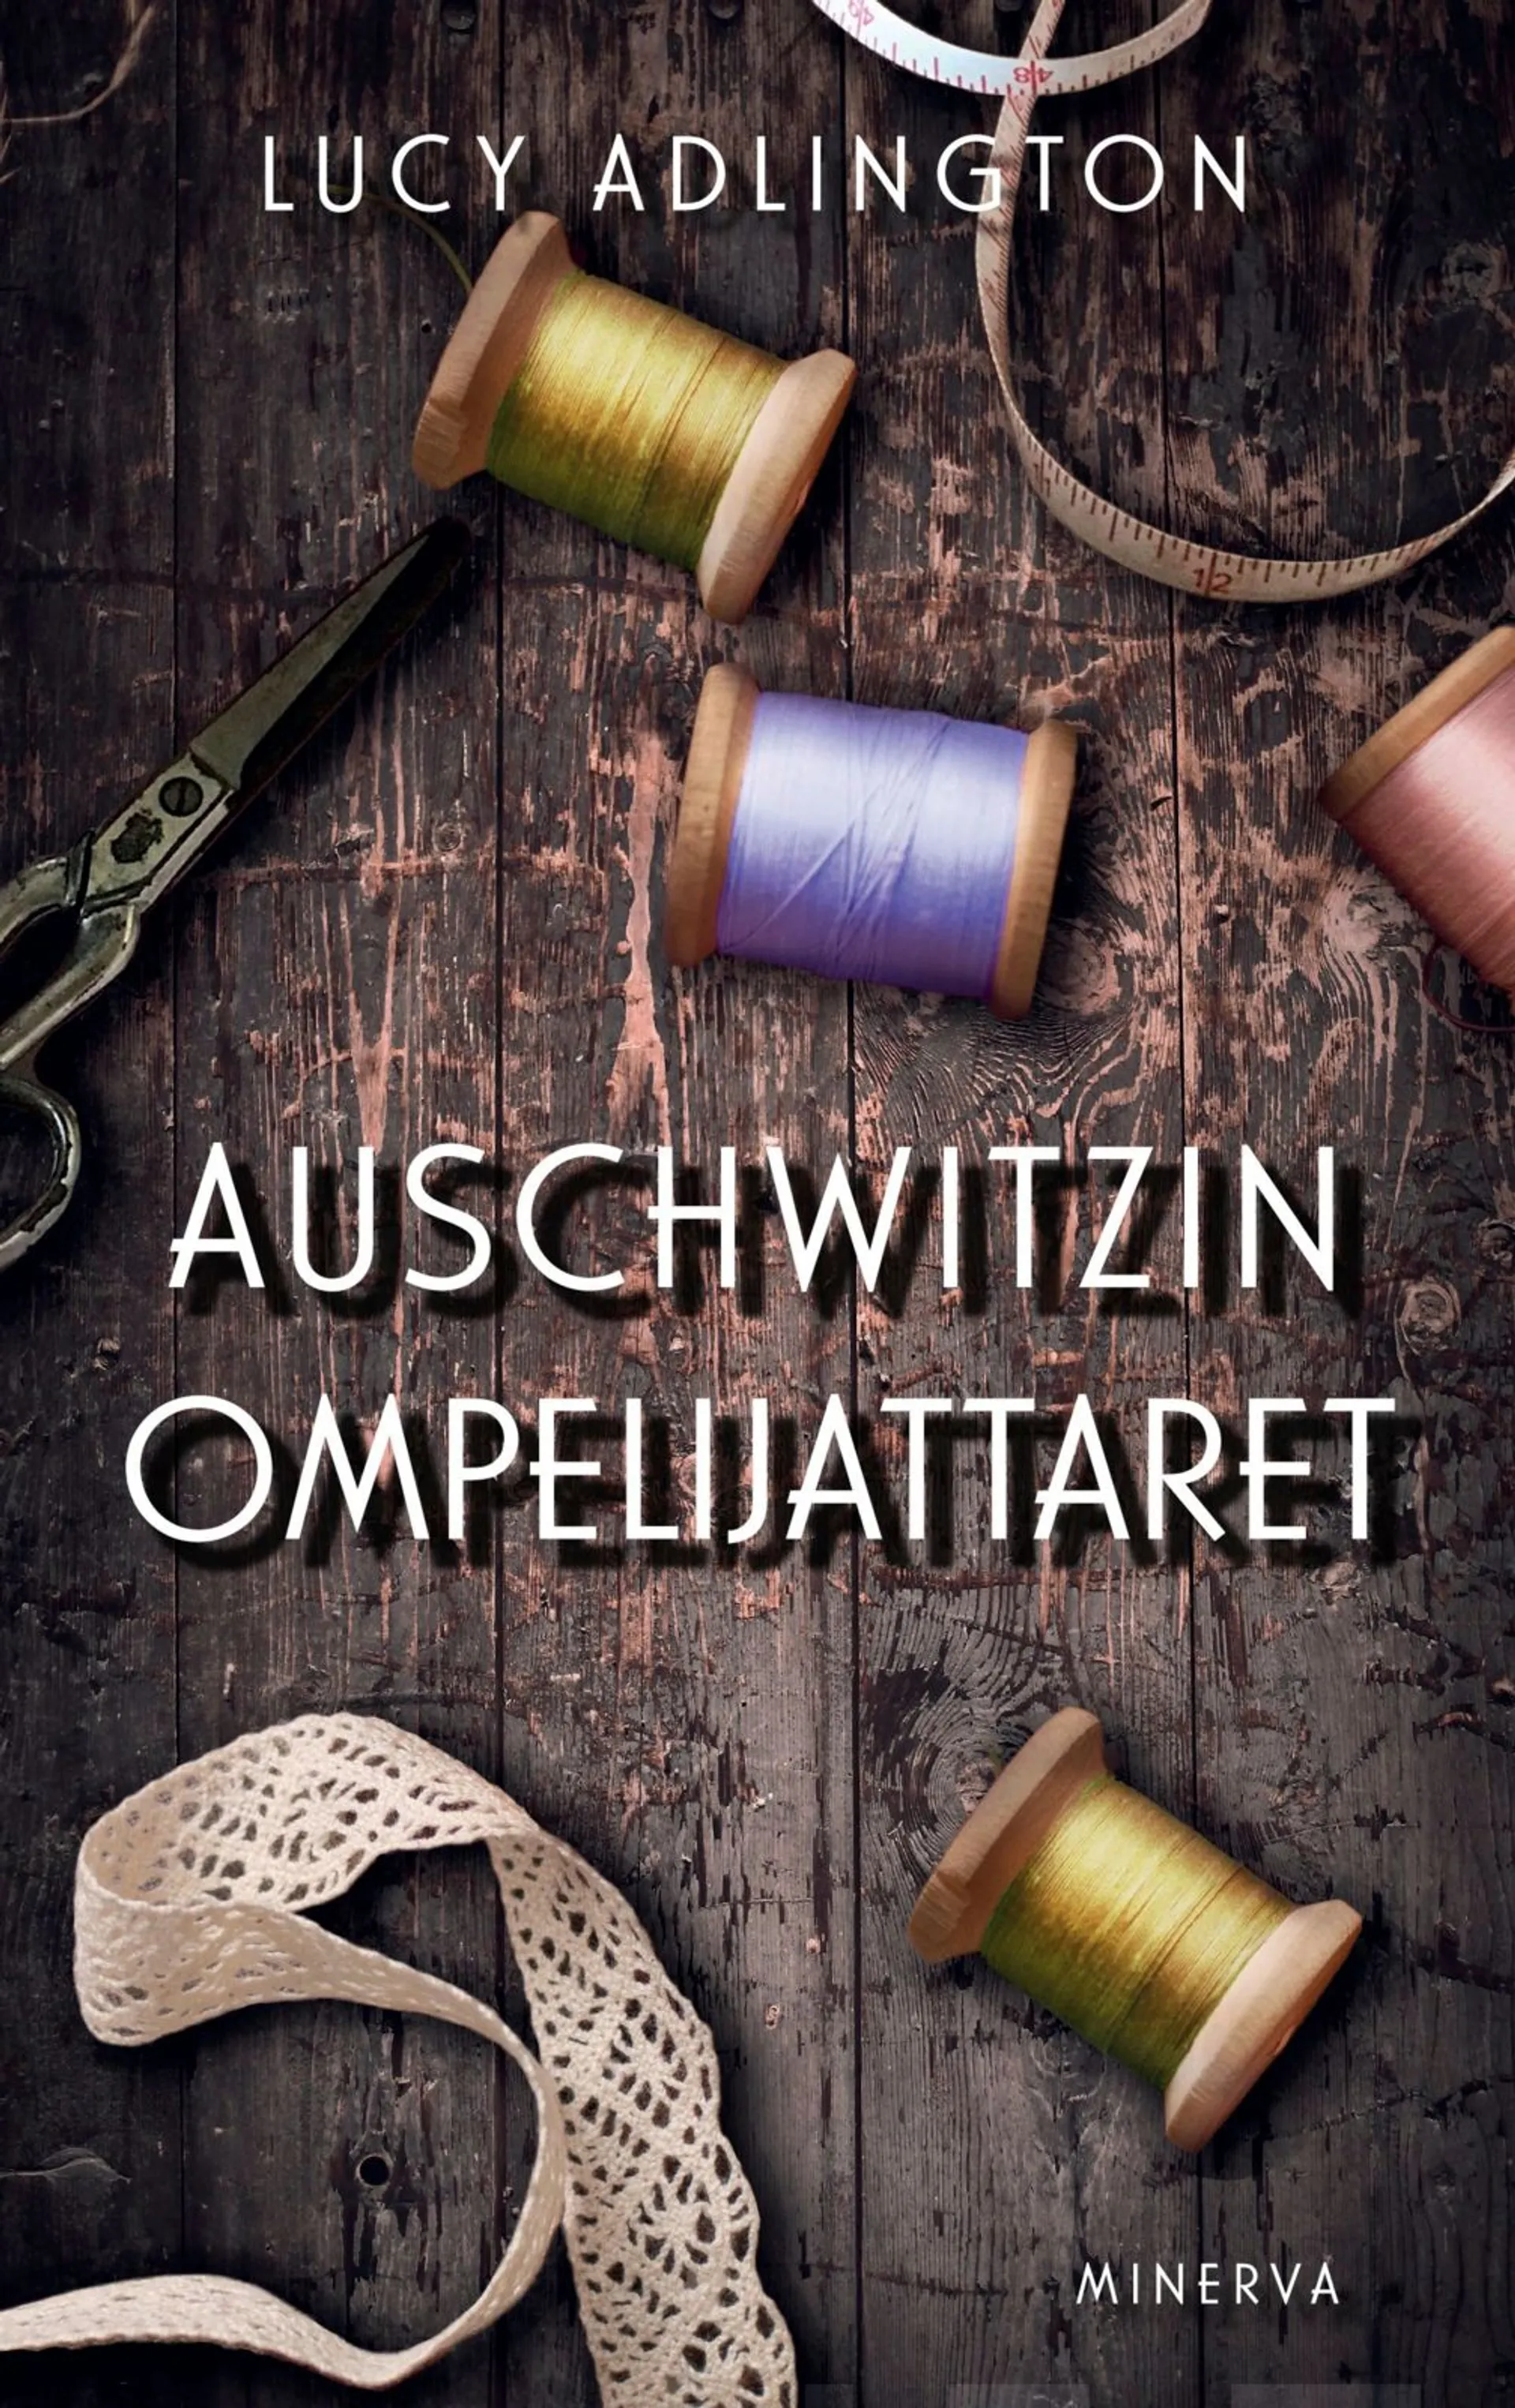 Adlington, Auschwitzin ompelijattaret - Tositarina naisista, jotka ompelivat säilyäkseen hengissä